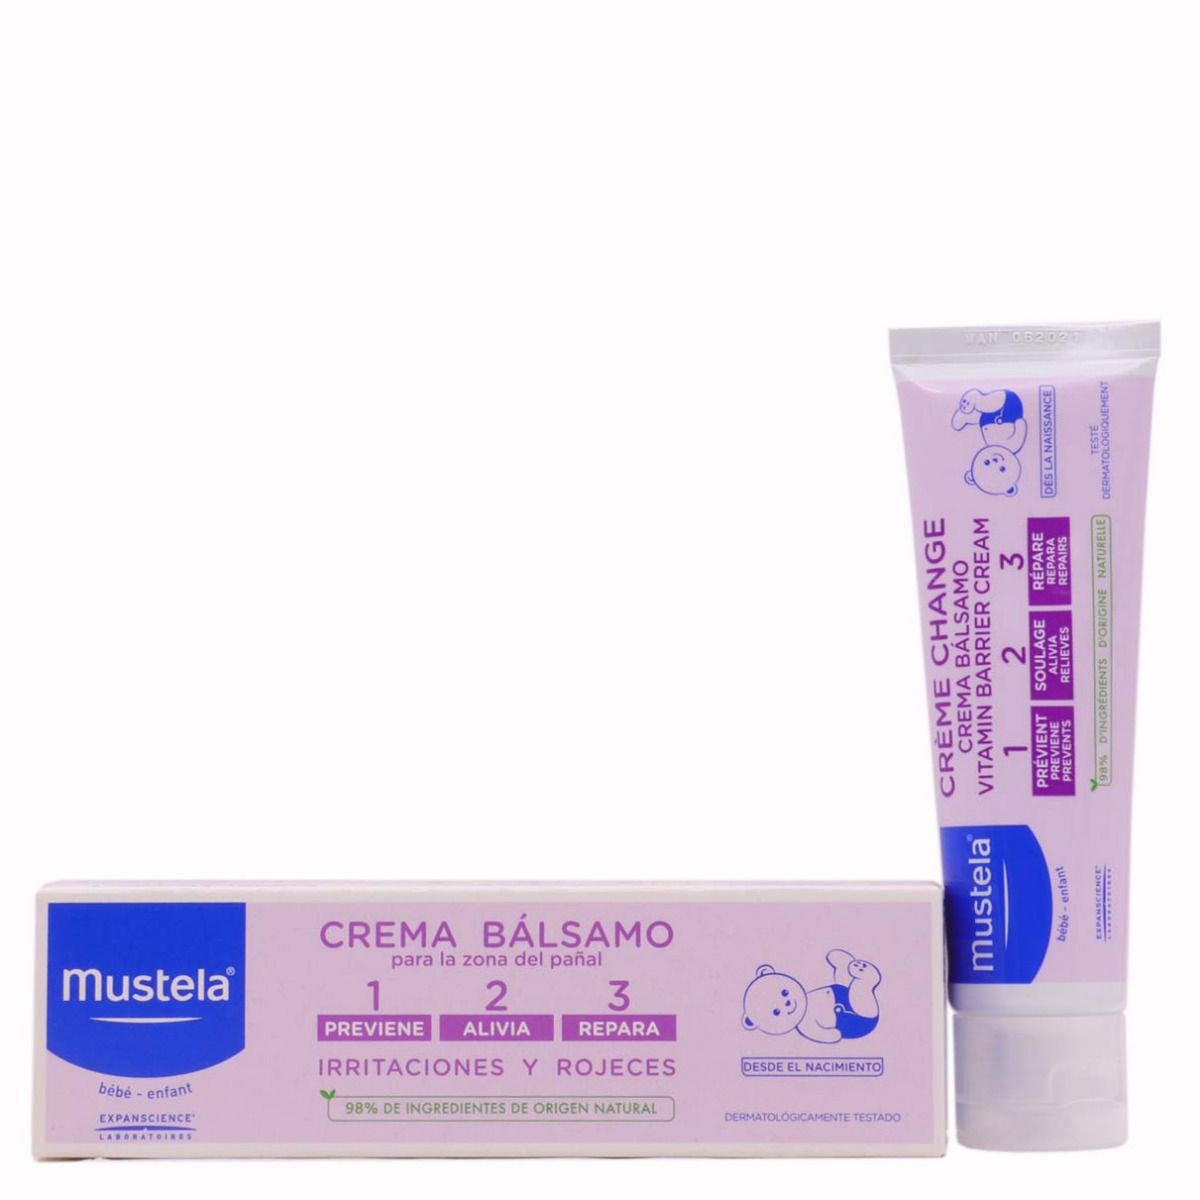 Mustela Crema Bálsamo cambio de pañal 50 ml. - BCN Pharma